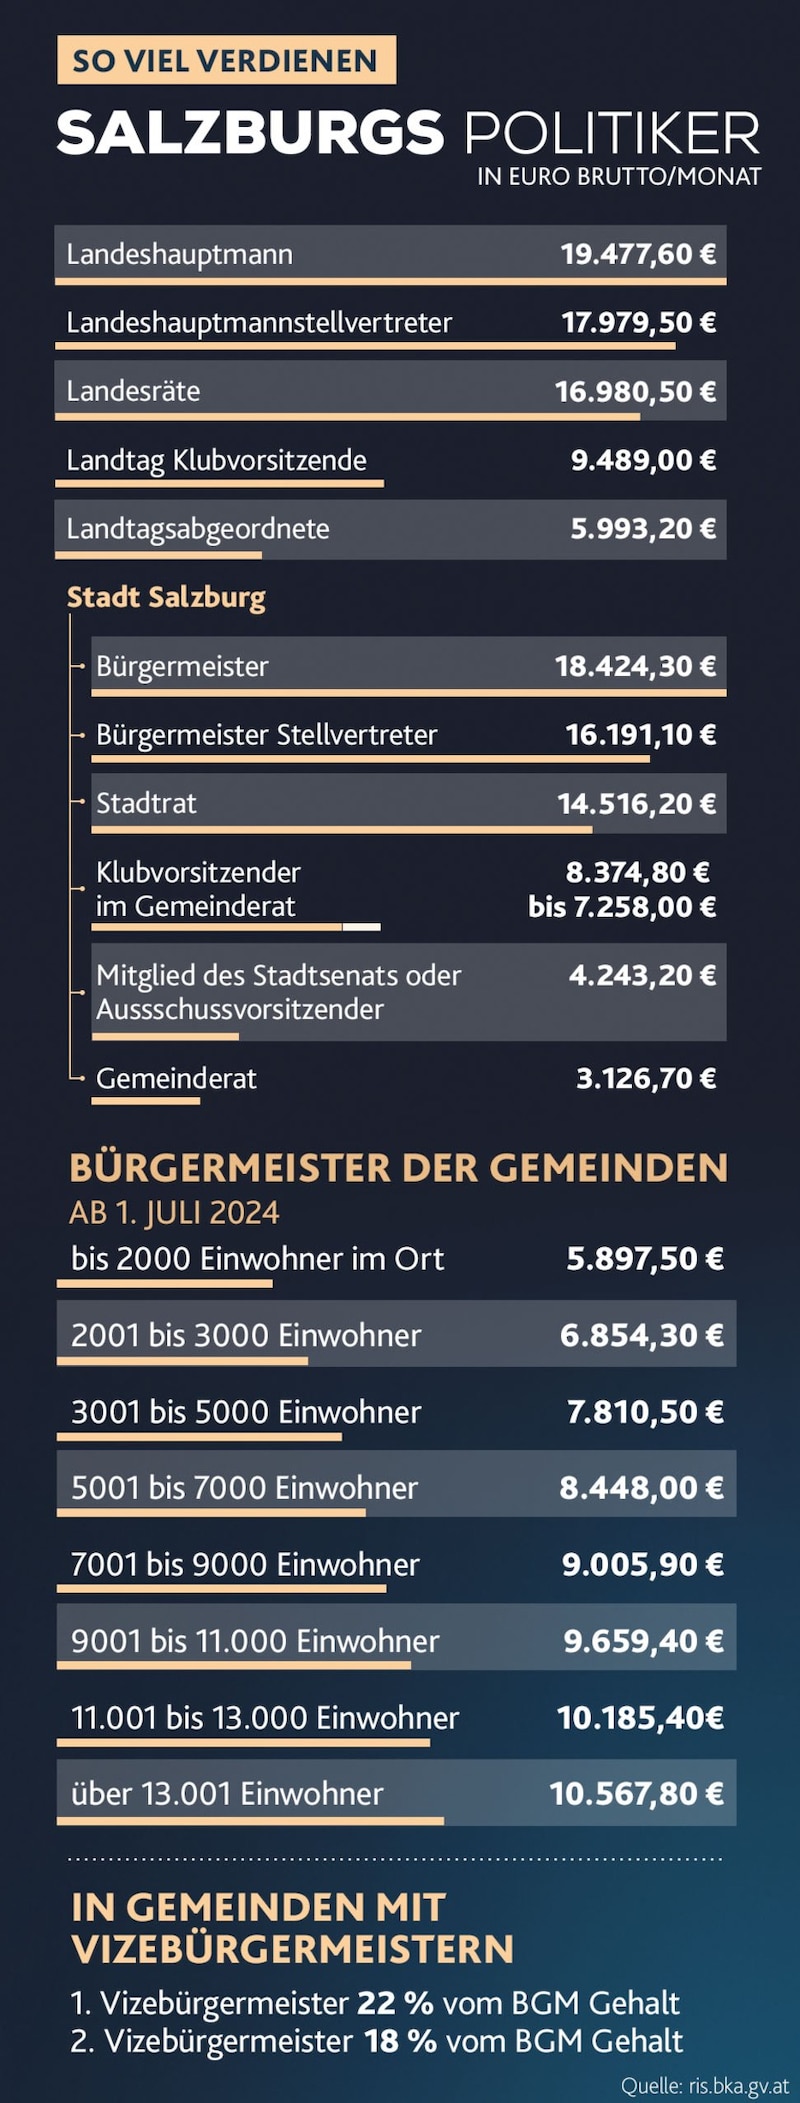 Genel bakış: Salzburg'daki siyasetçilerin maaşlarına bir bakış. (Bild: Krone KREATIV/Adobe Stock)